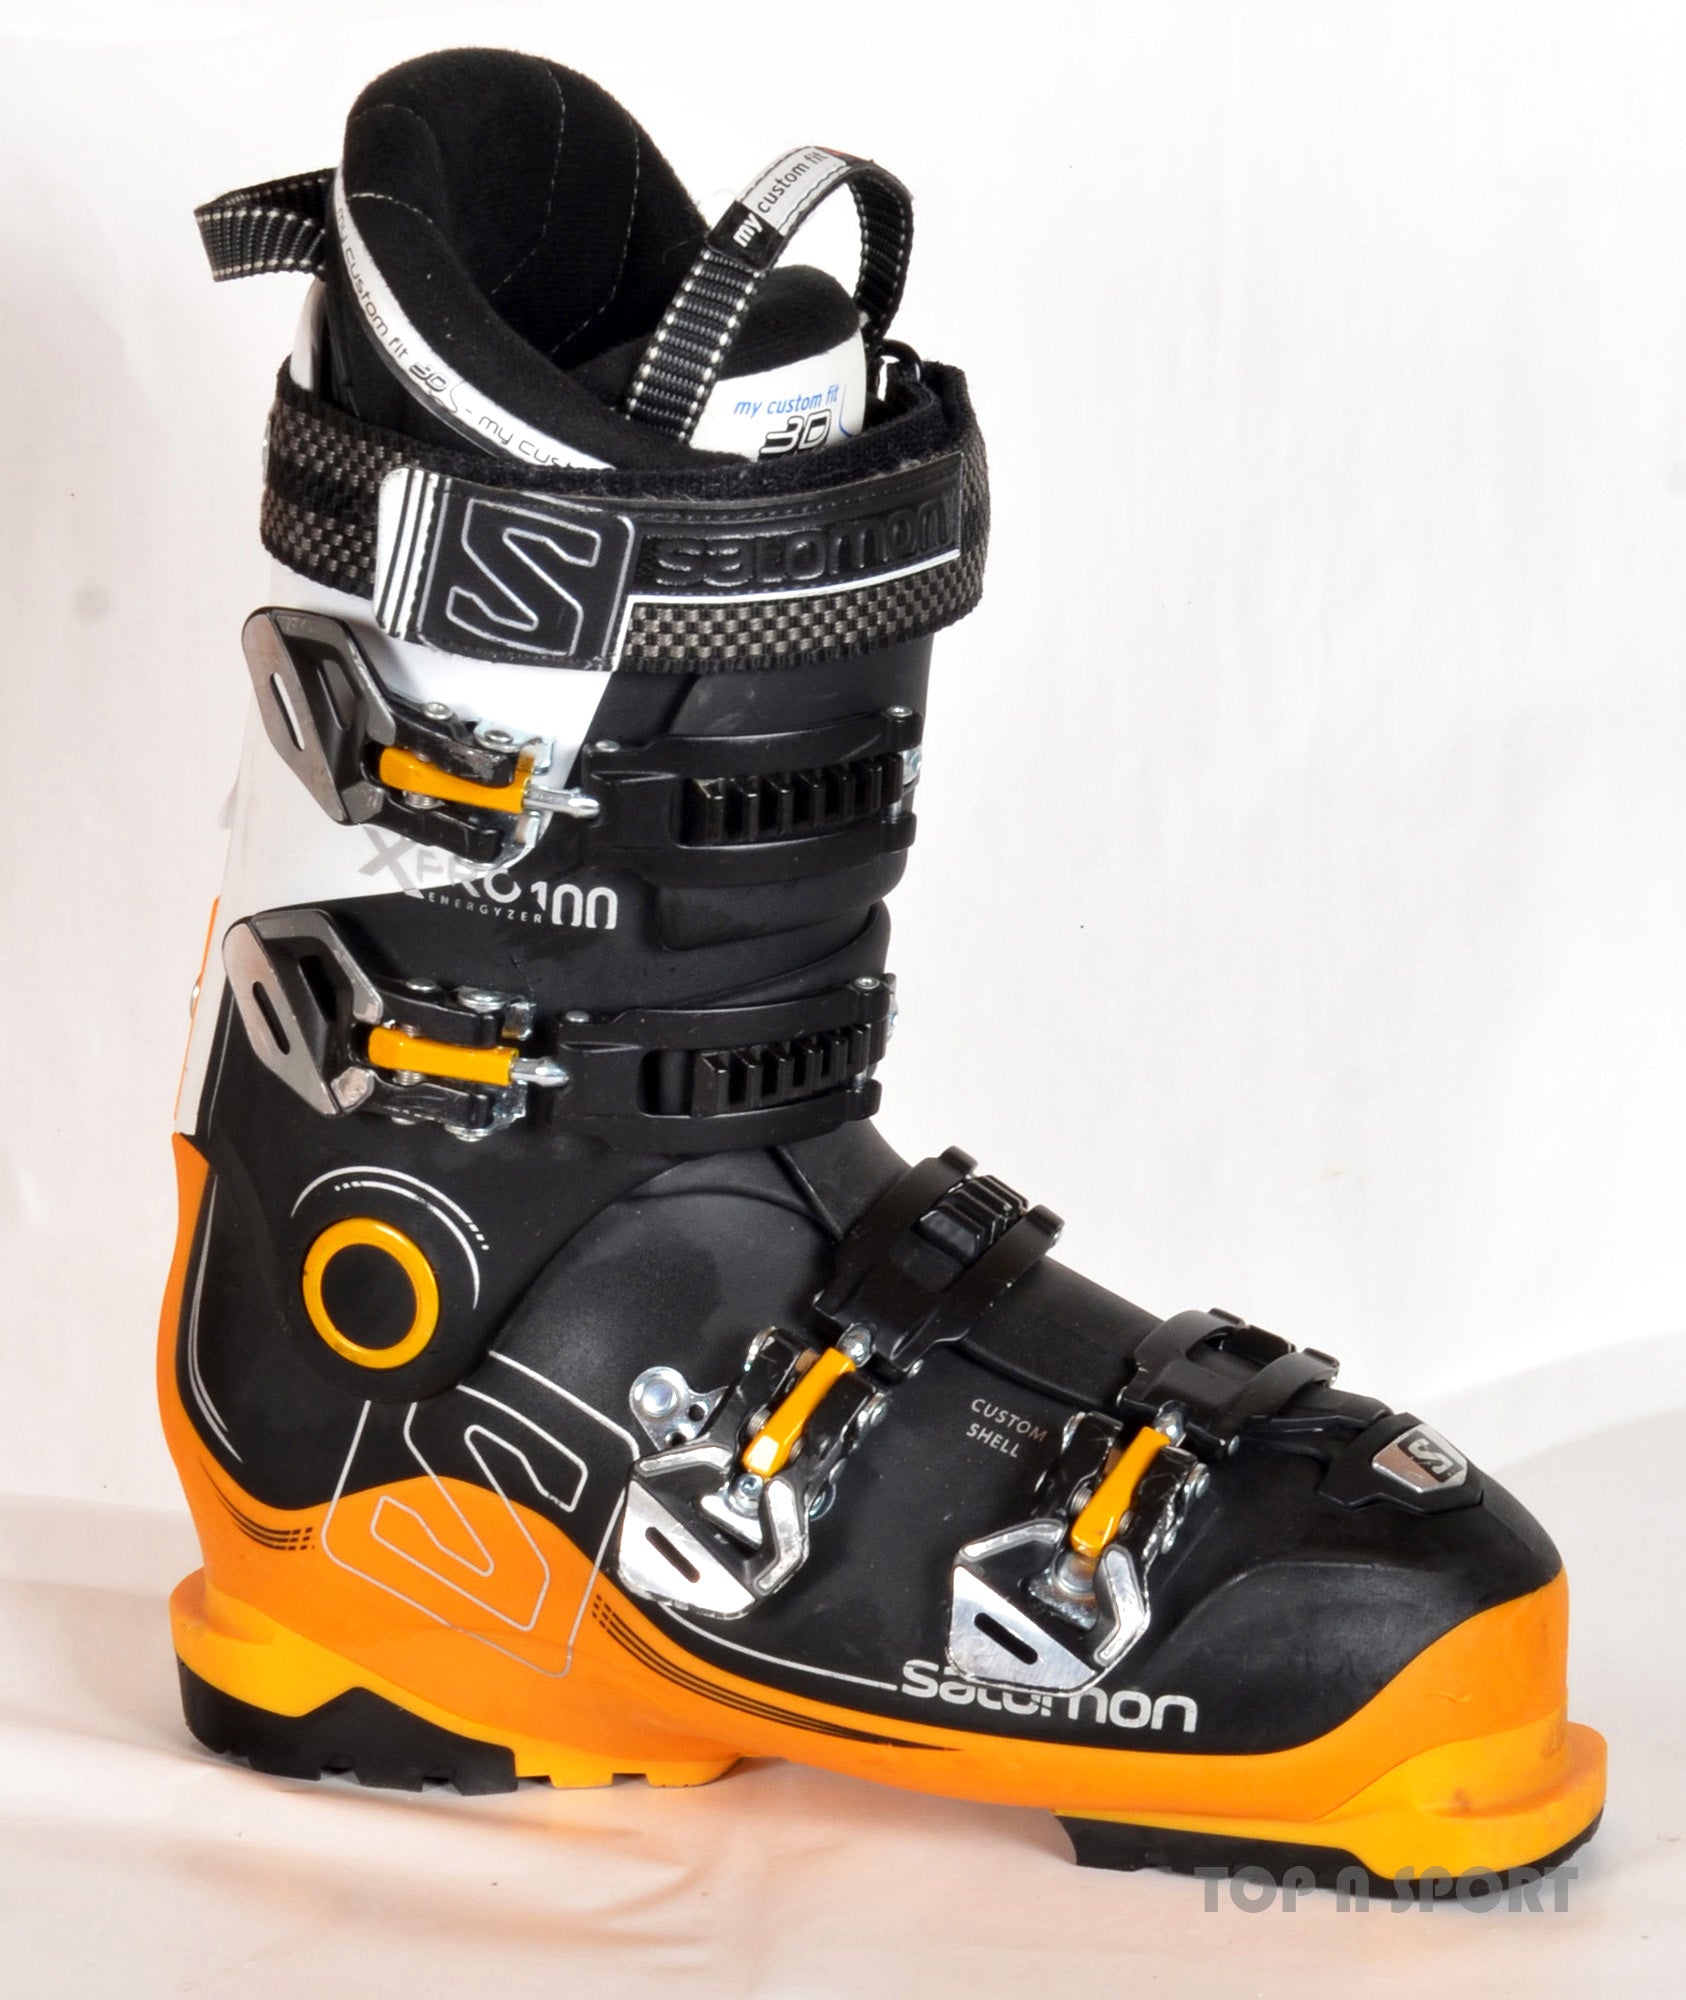 Salomon X 100 white - chaussures de ski d'occasion – Top N Sport, du matériel ski d'occasion